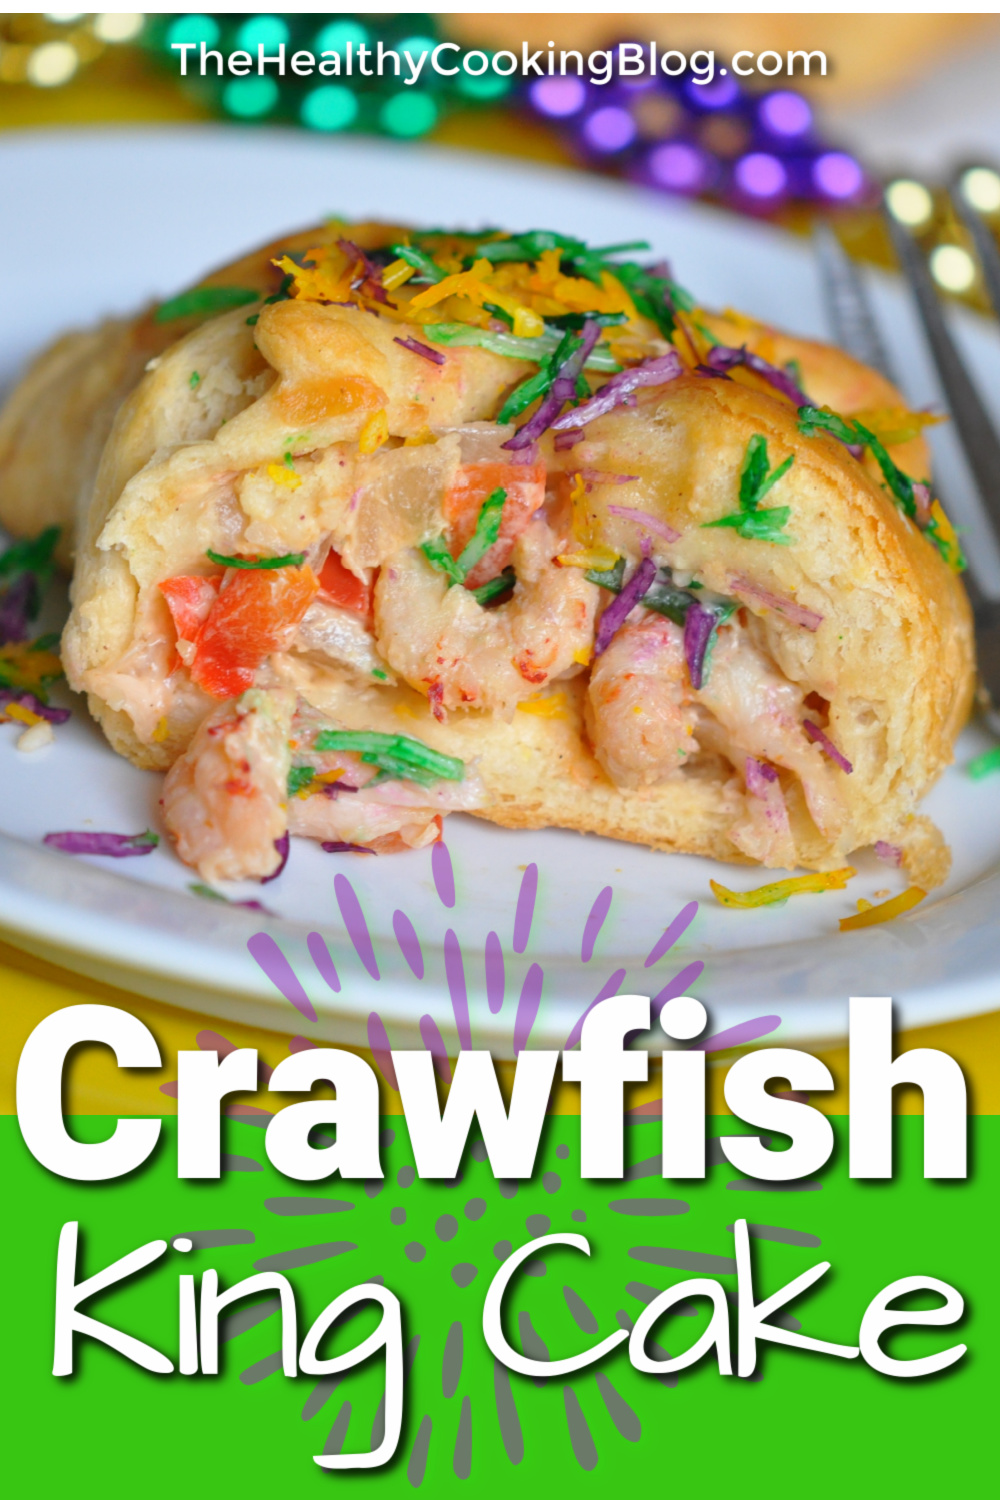 Crawfish King Cake Picmonkey 2 